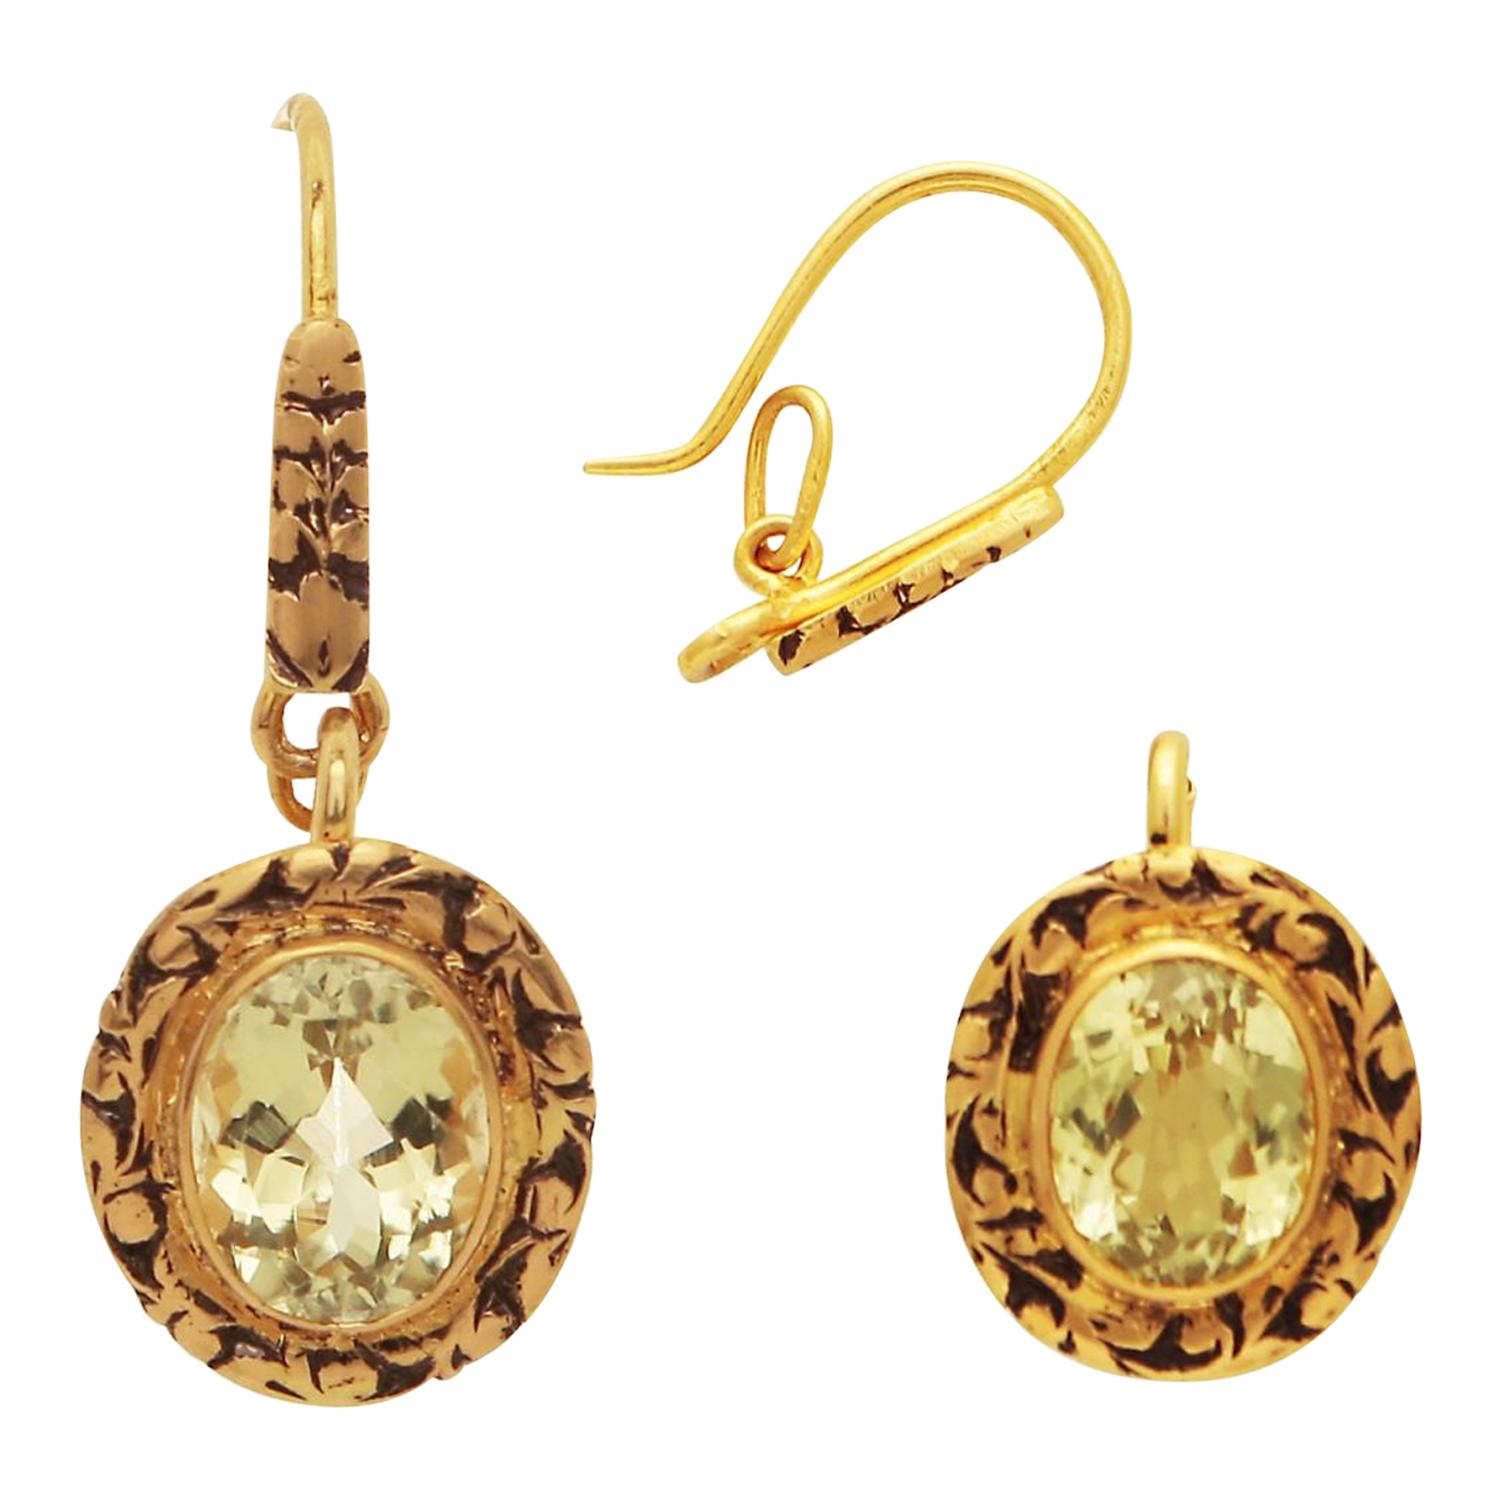 15th Century Inspired 3 in 1 Topaz Earrings/Pendant